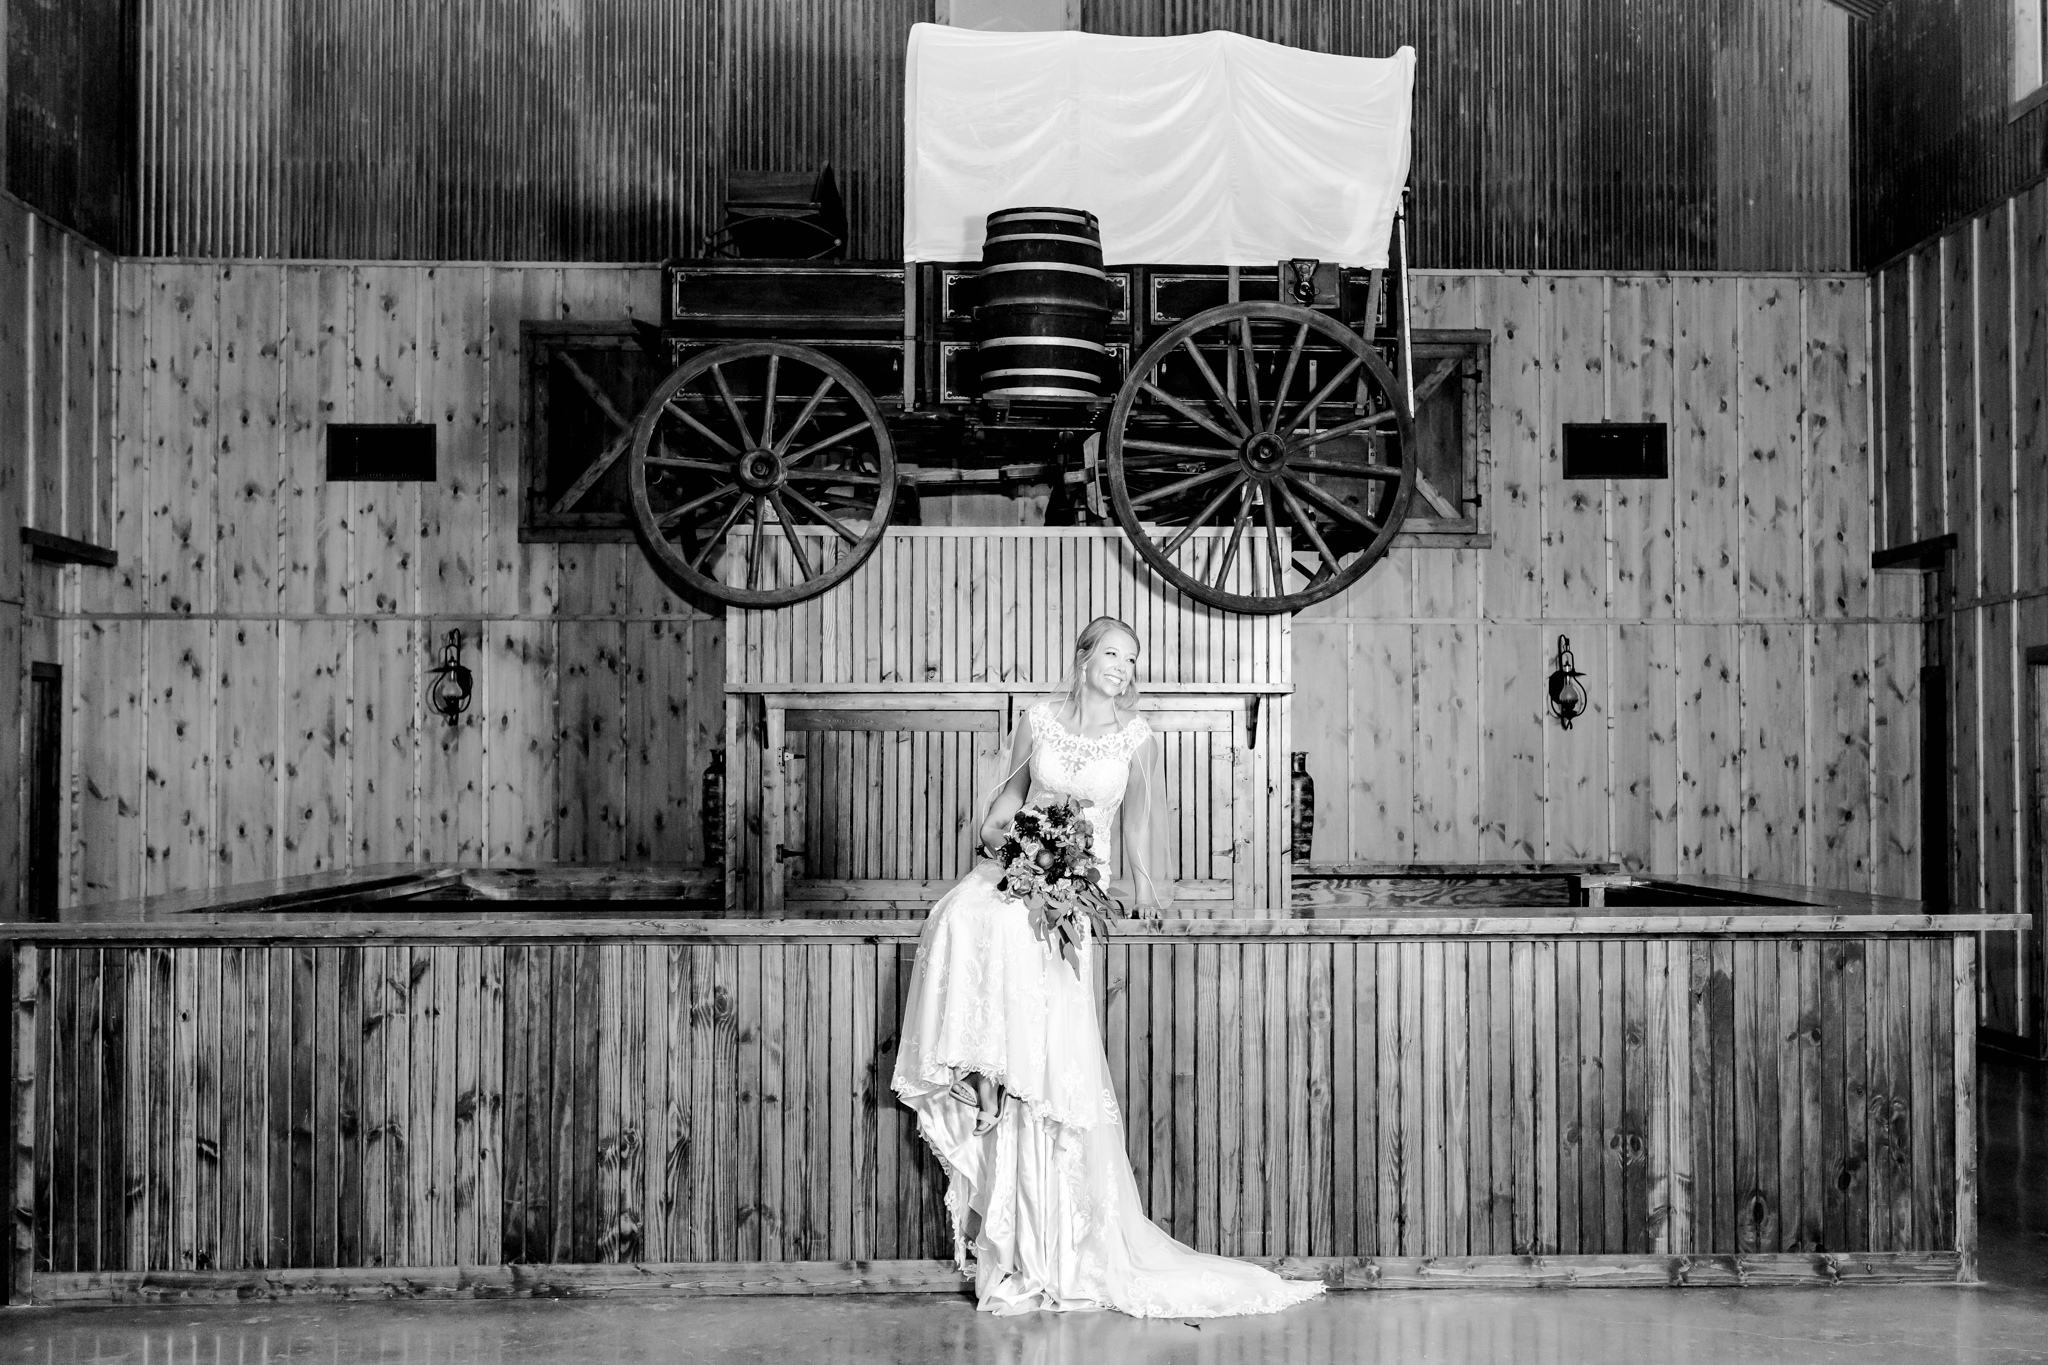 A Bridal Session at Western Sky in Bulverde, TX by Dawn Elizabeth Studios, San Antonio Wedding Photographer